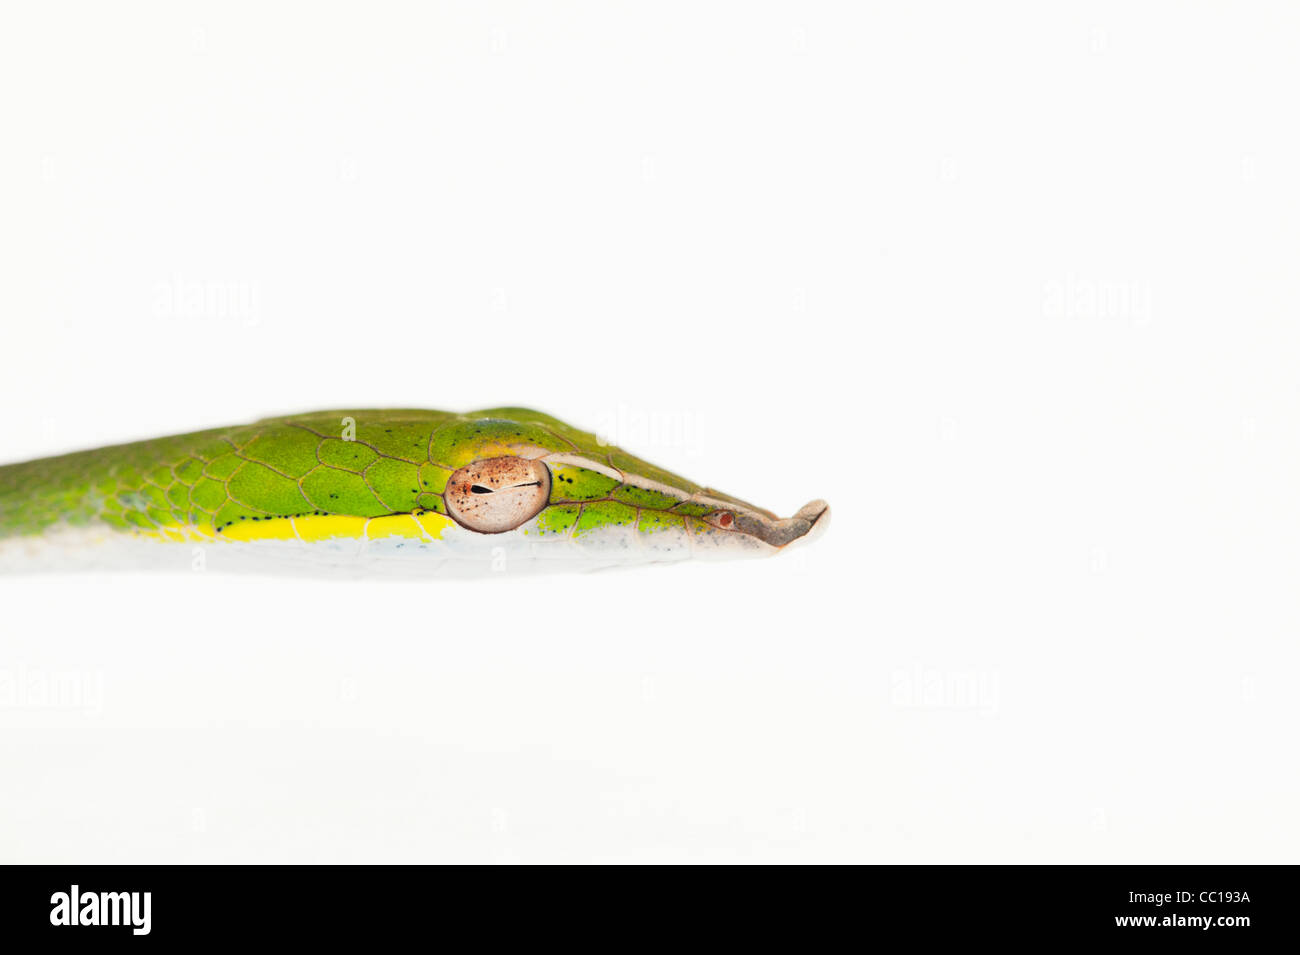 Ahaetulla nasuta . Menores serpiente vid verde sobre fondo blanco. Foto de stock